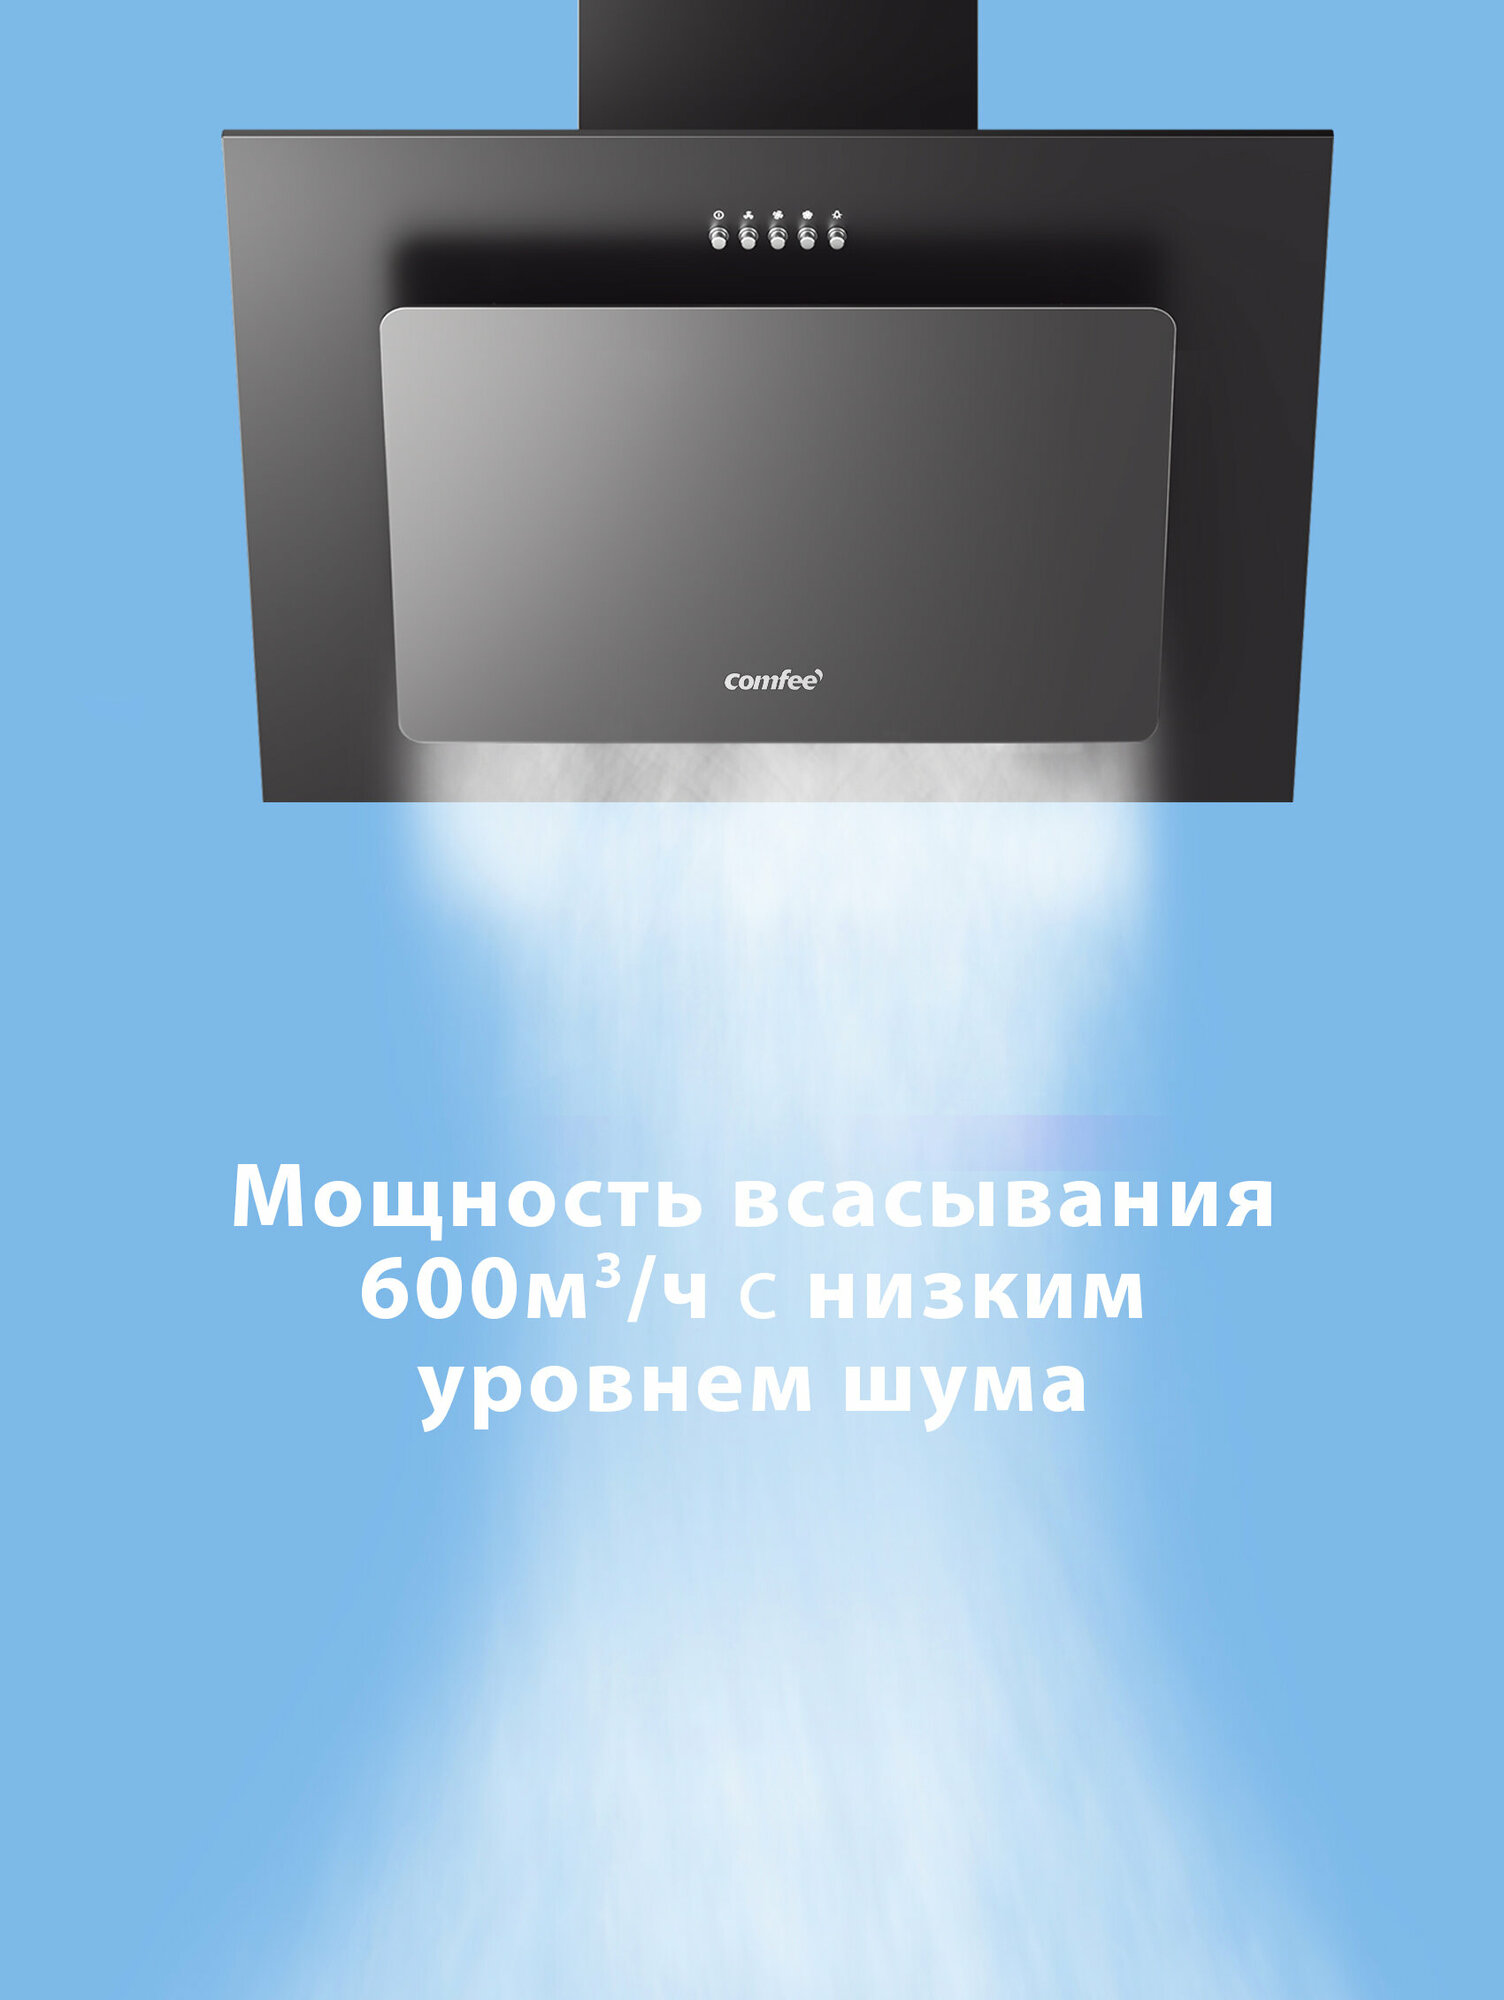 Вытяжка кухонная наклонная 50 см Comfee CHA600GB, черное стекло, 3 скорости, отвод и рециркуляция, алюминиевый фильтр, LED подсветка